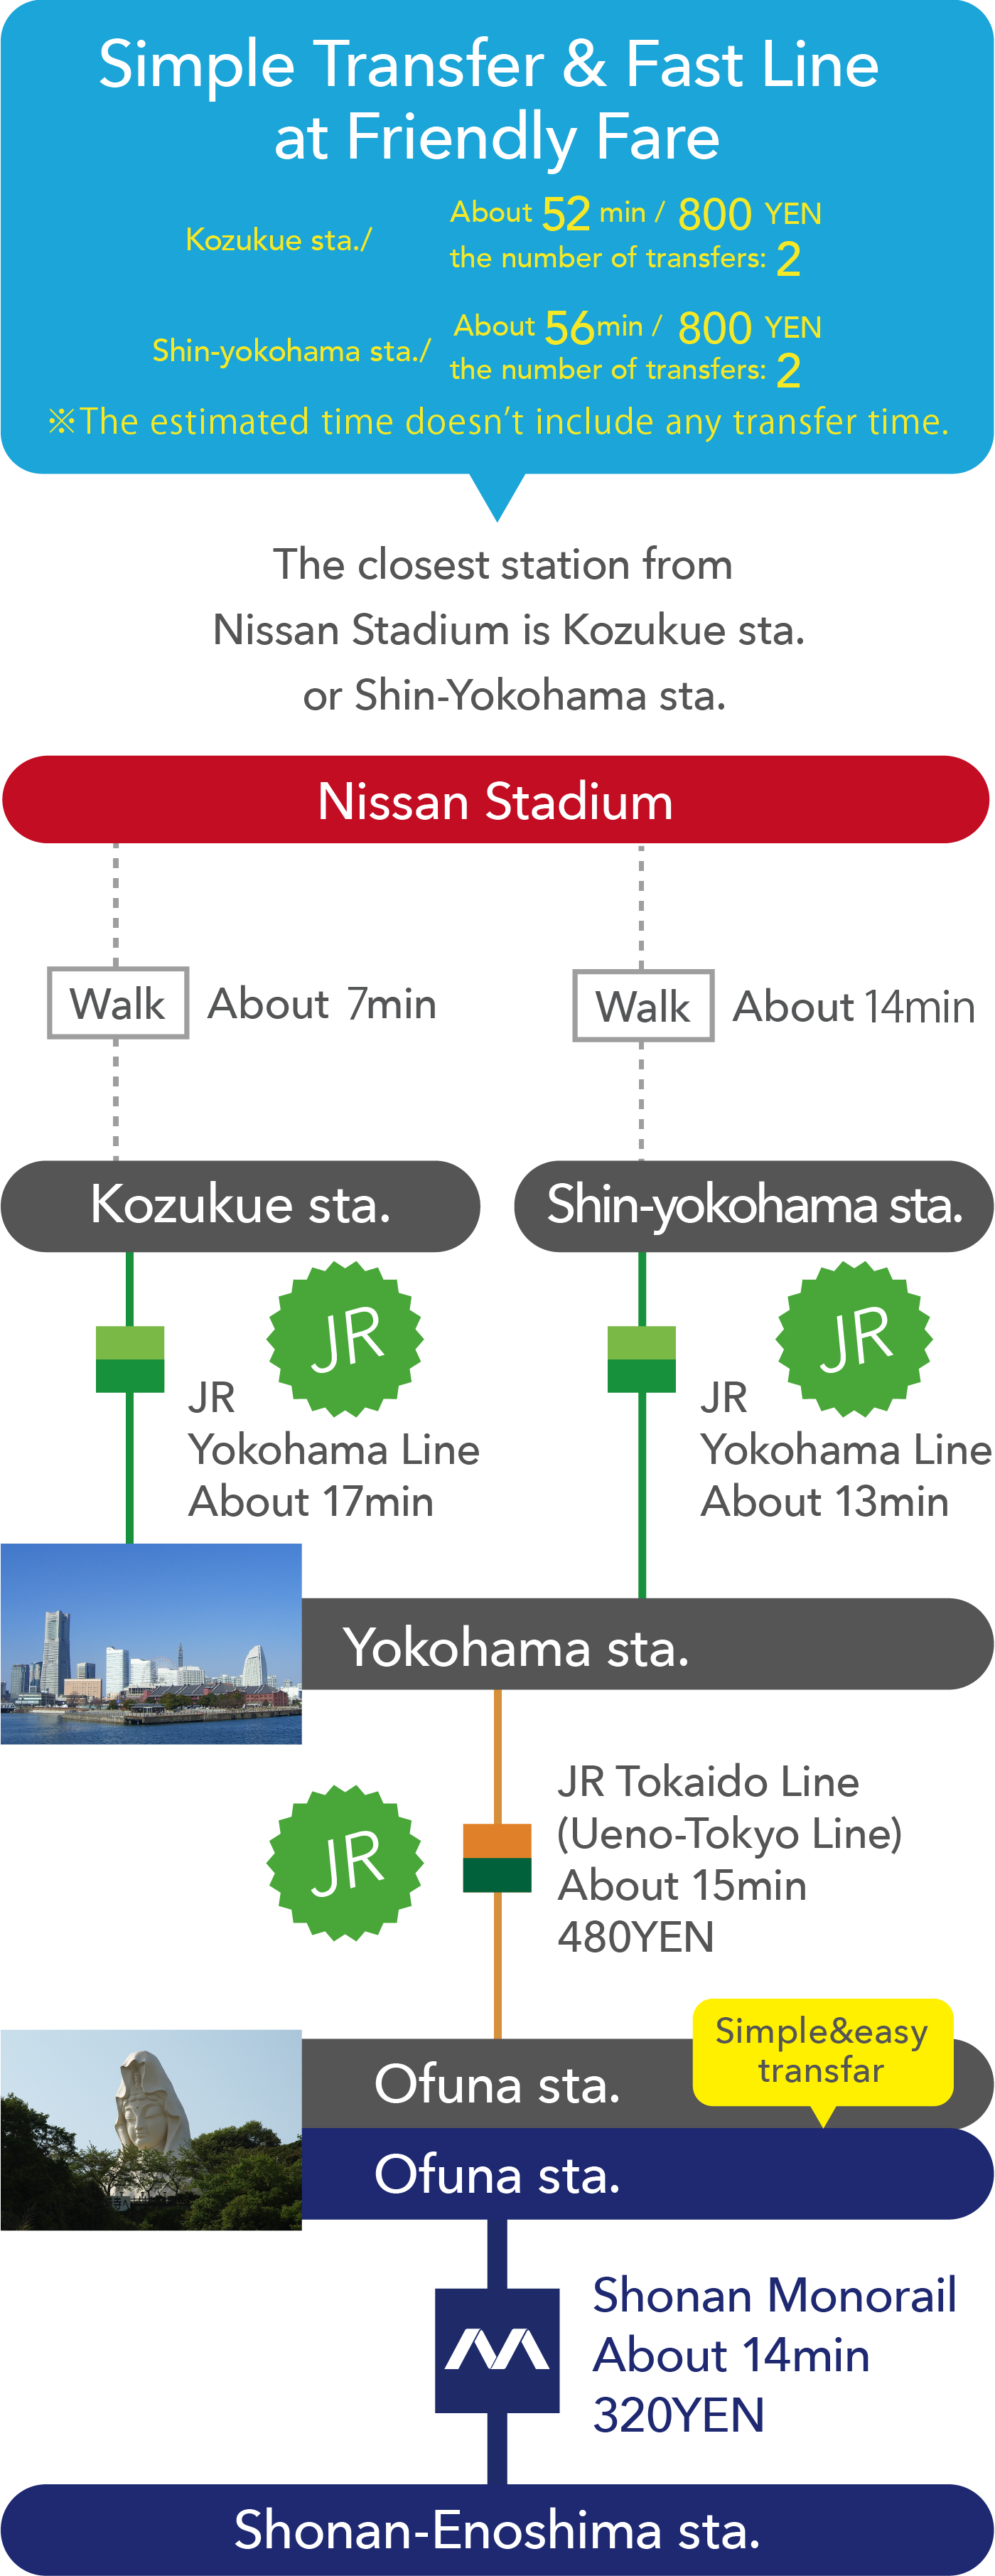 Simple Transfer & Fast Line 
at Friendly Price. Kozukue sta./ About 52 min / 800 YEN.Shin-yokohama sta./About 56min / 800 YEN